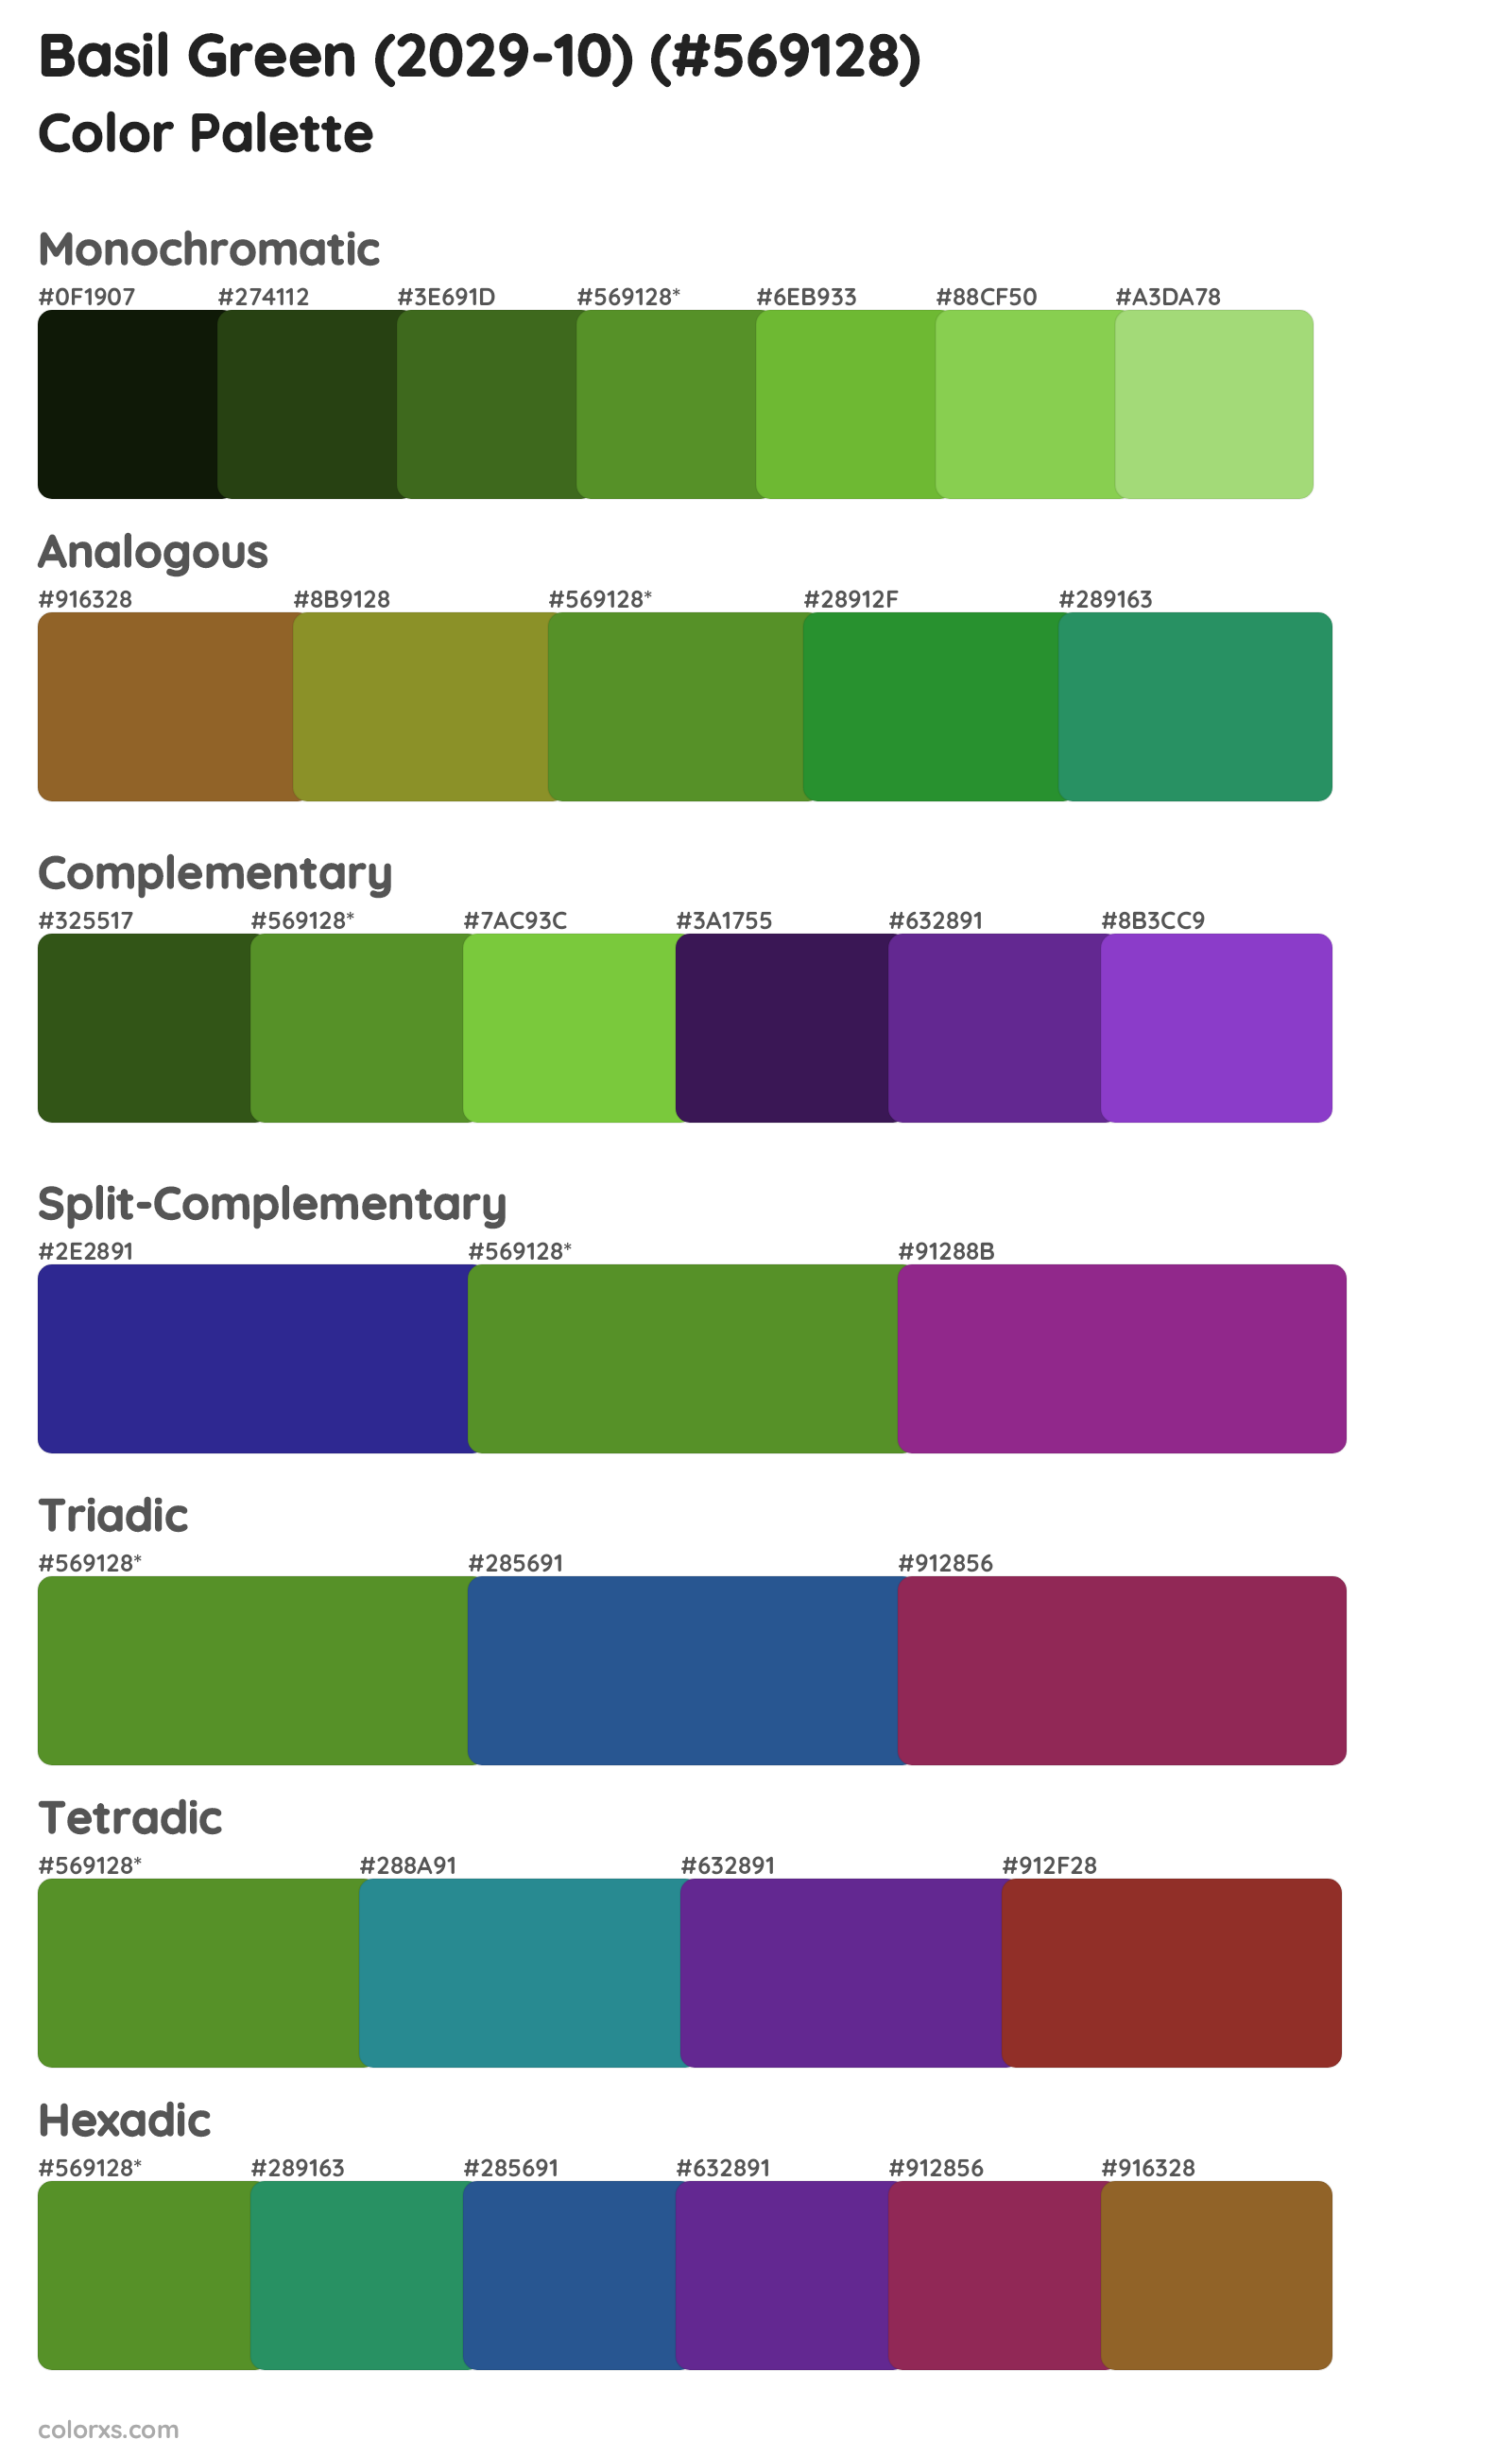 Basil Green (2029-10) Color Scheme Palettes